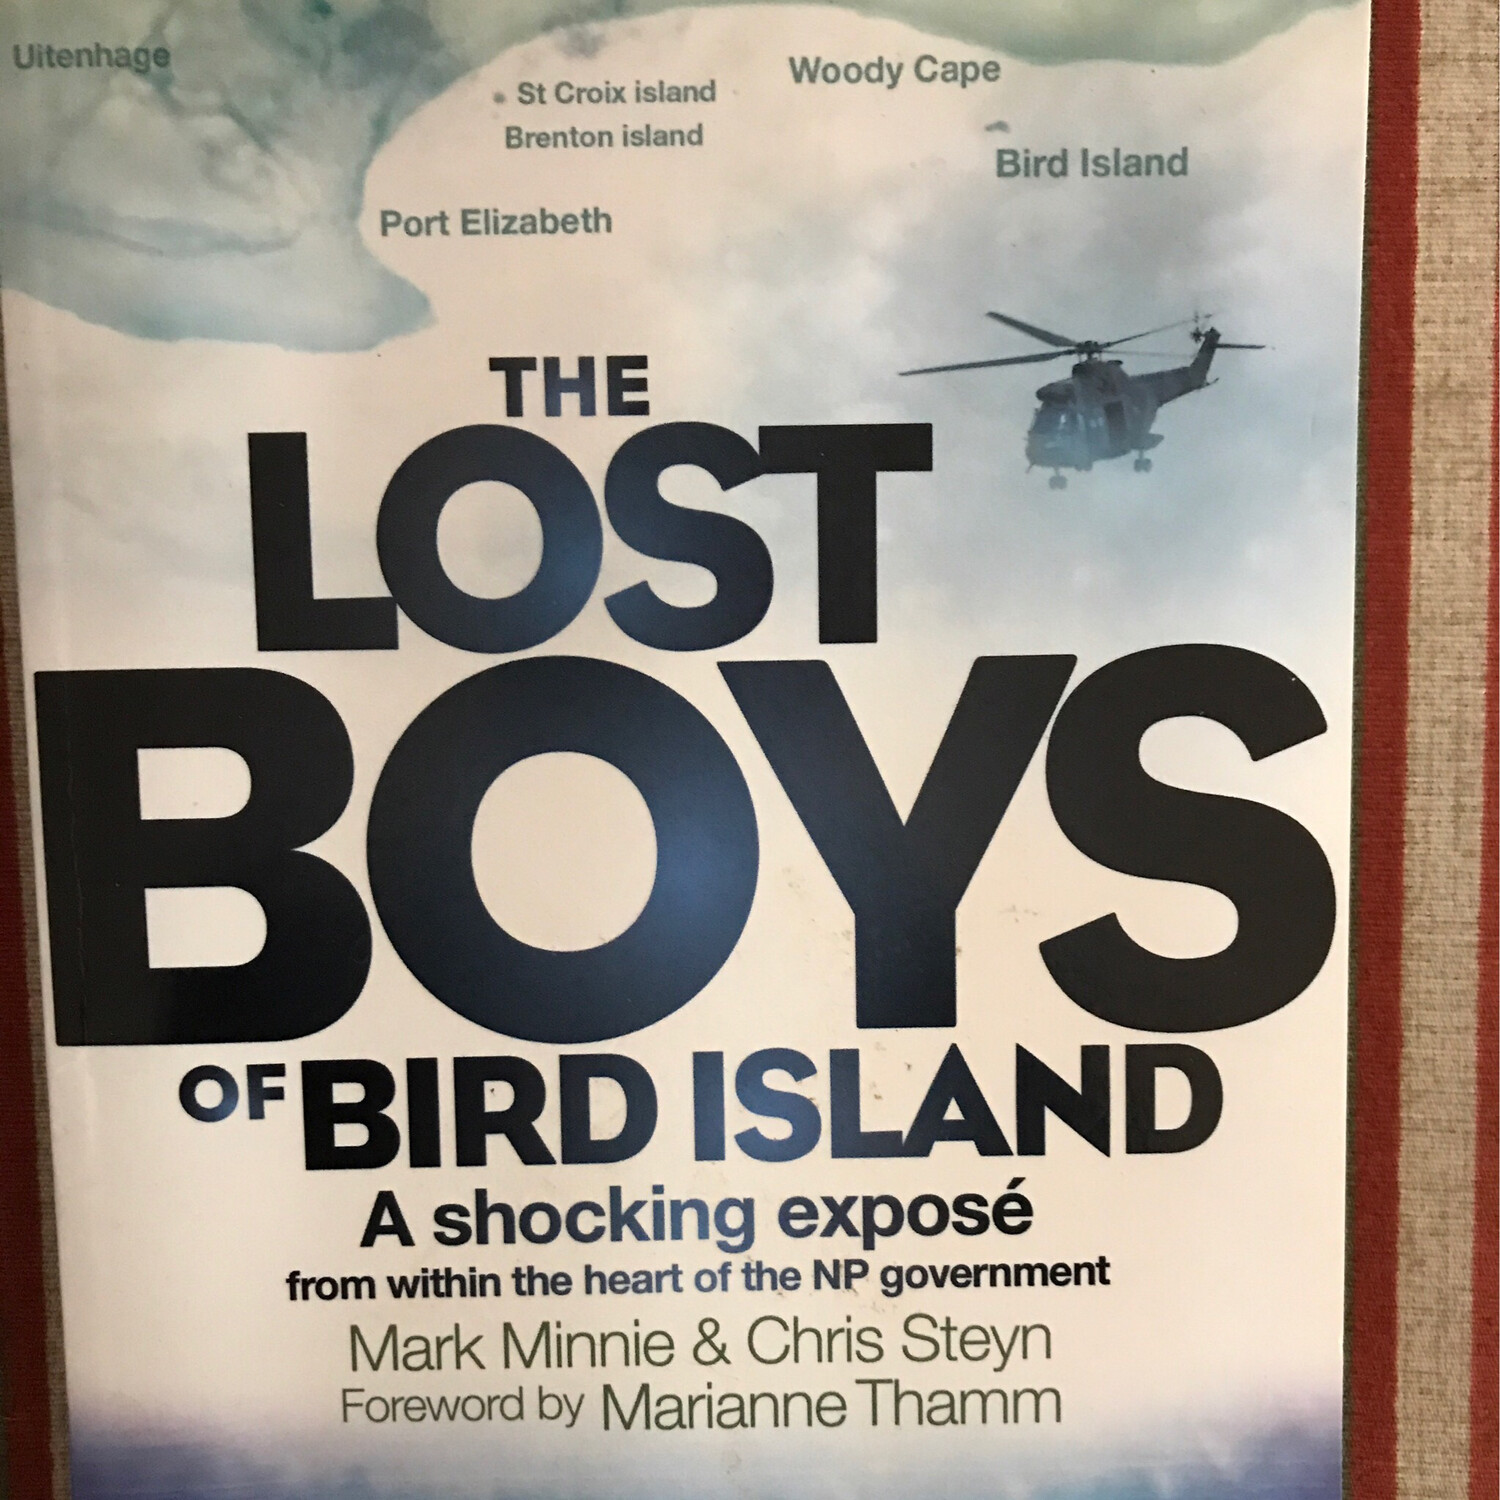 The Lost Boys Of Bird Island, Mark Minnie & Chris Steyn